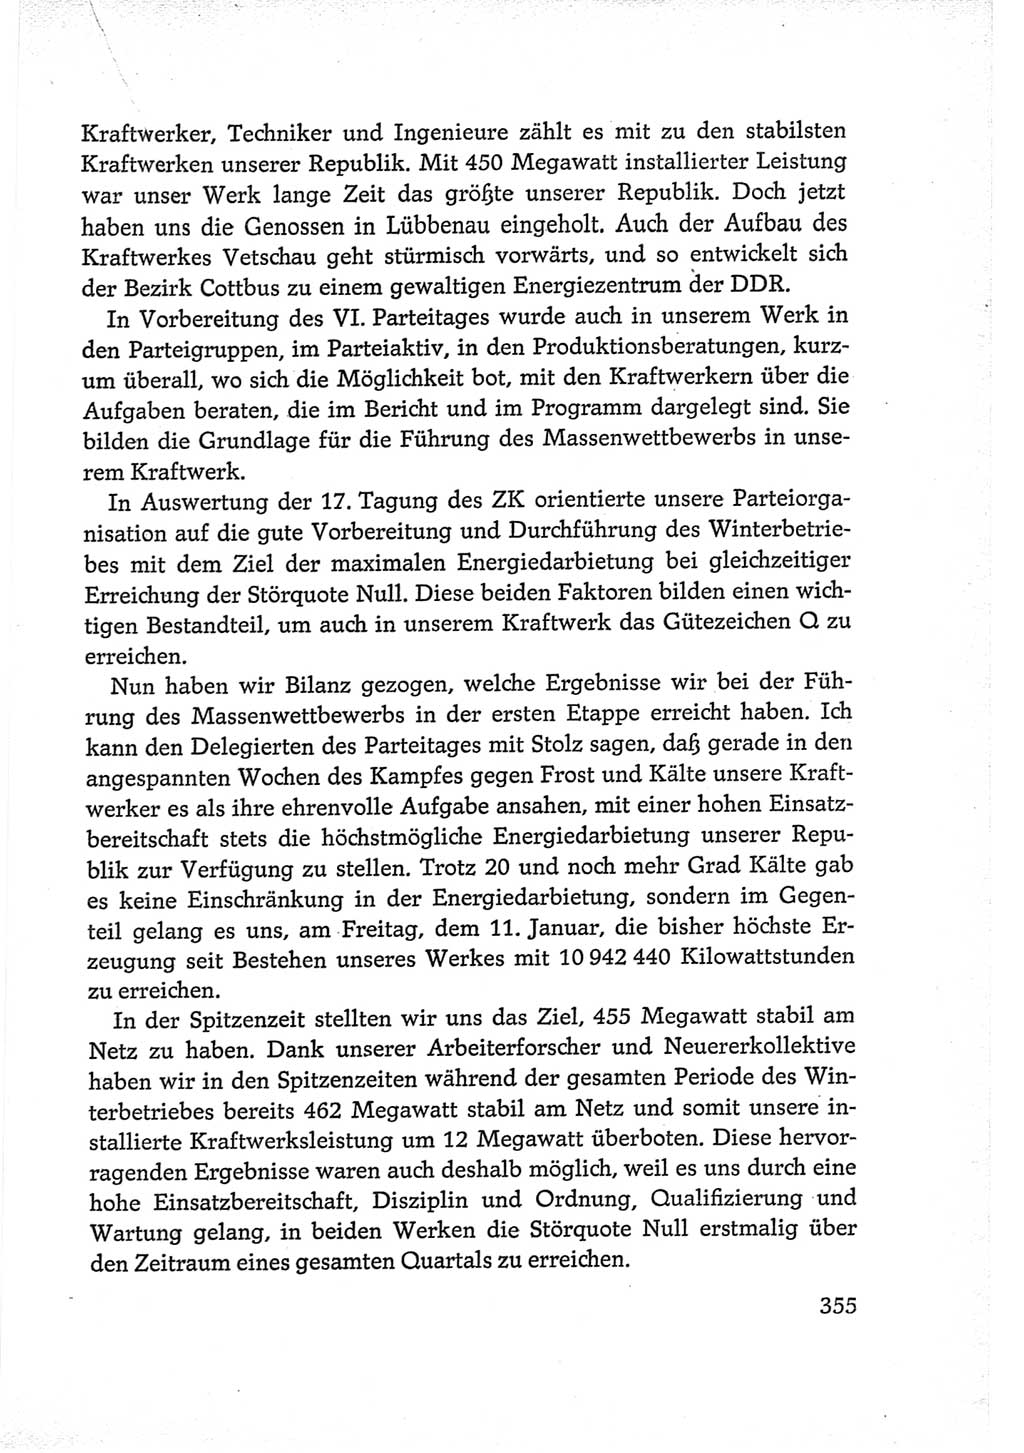 Protokoll der Verhandlungen des Ⅵ. Parteitages der Sozialistischen Einheitspartei Deutschlands (SED) [Deutsche Demokratische Republik (DDR)] 1963, Band Ⅲ, Seite 355 (Prot. Verh. Ⅵ. PT SED DDR 1963, Bd. Ⅲ, S. 355)